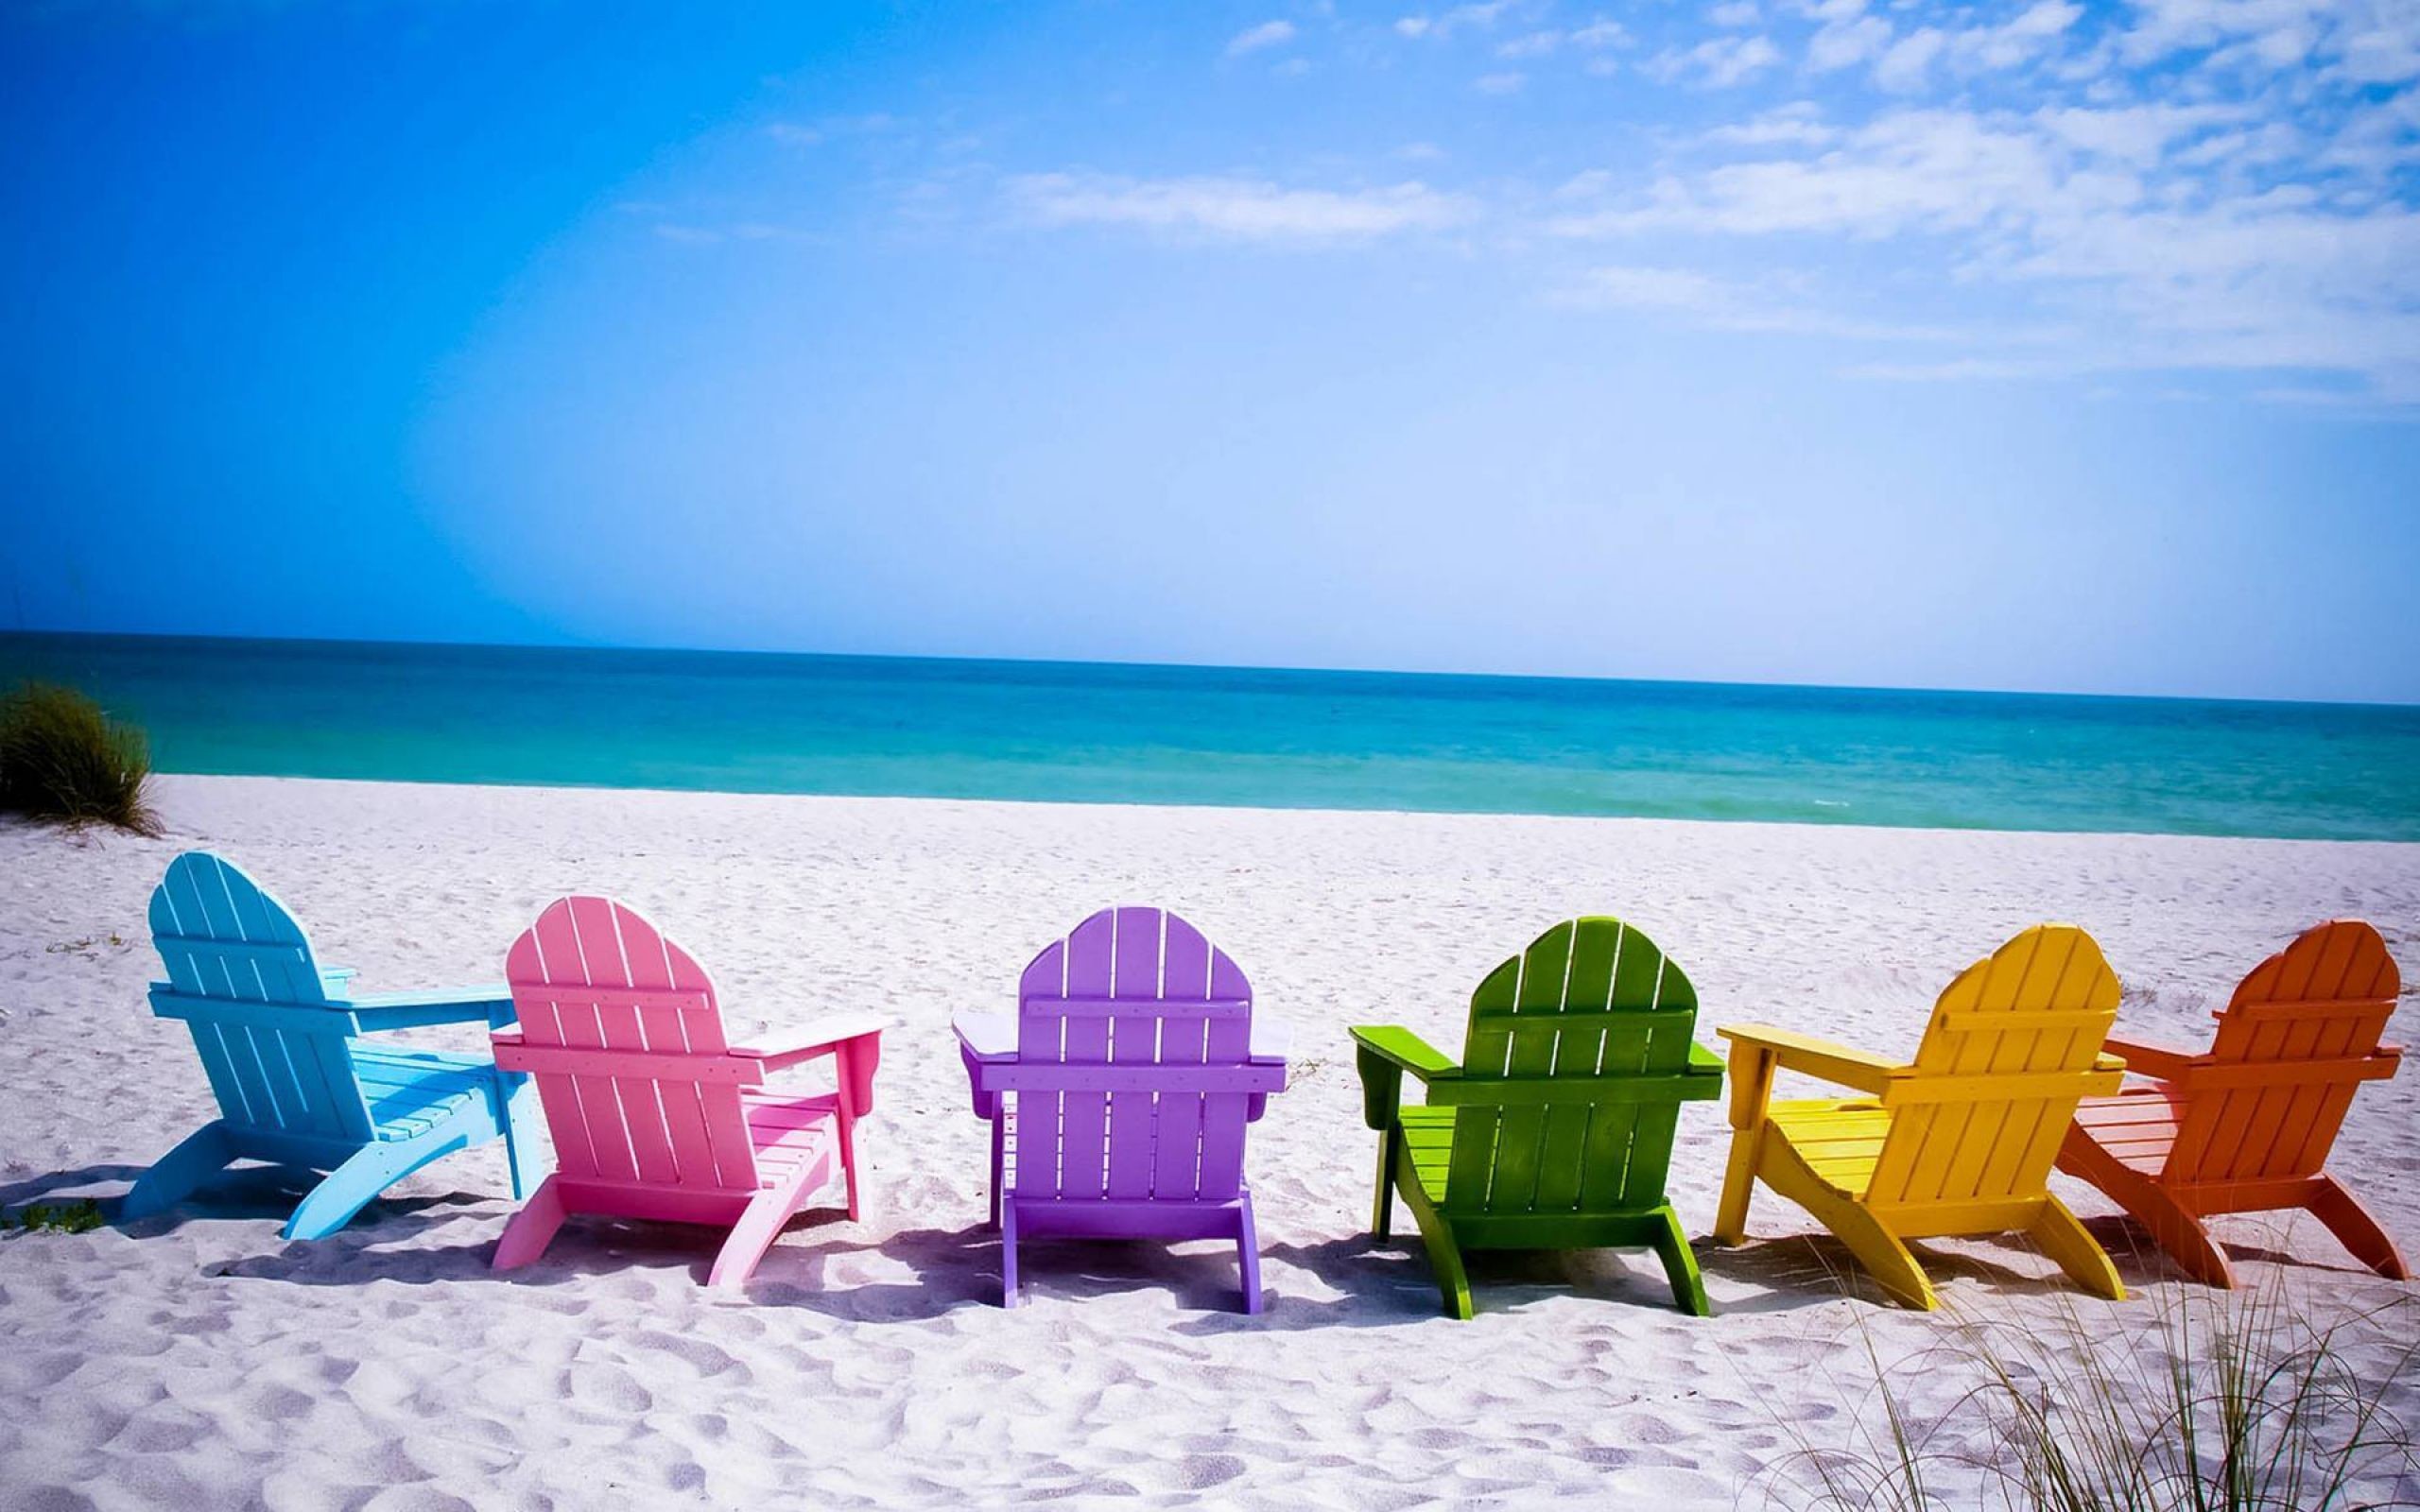 2560x1600 Summer Beach Chairs Desktop Wallpaper